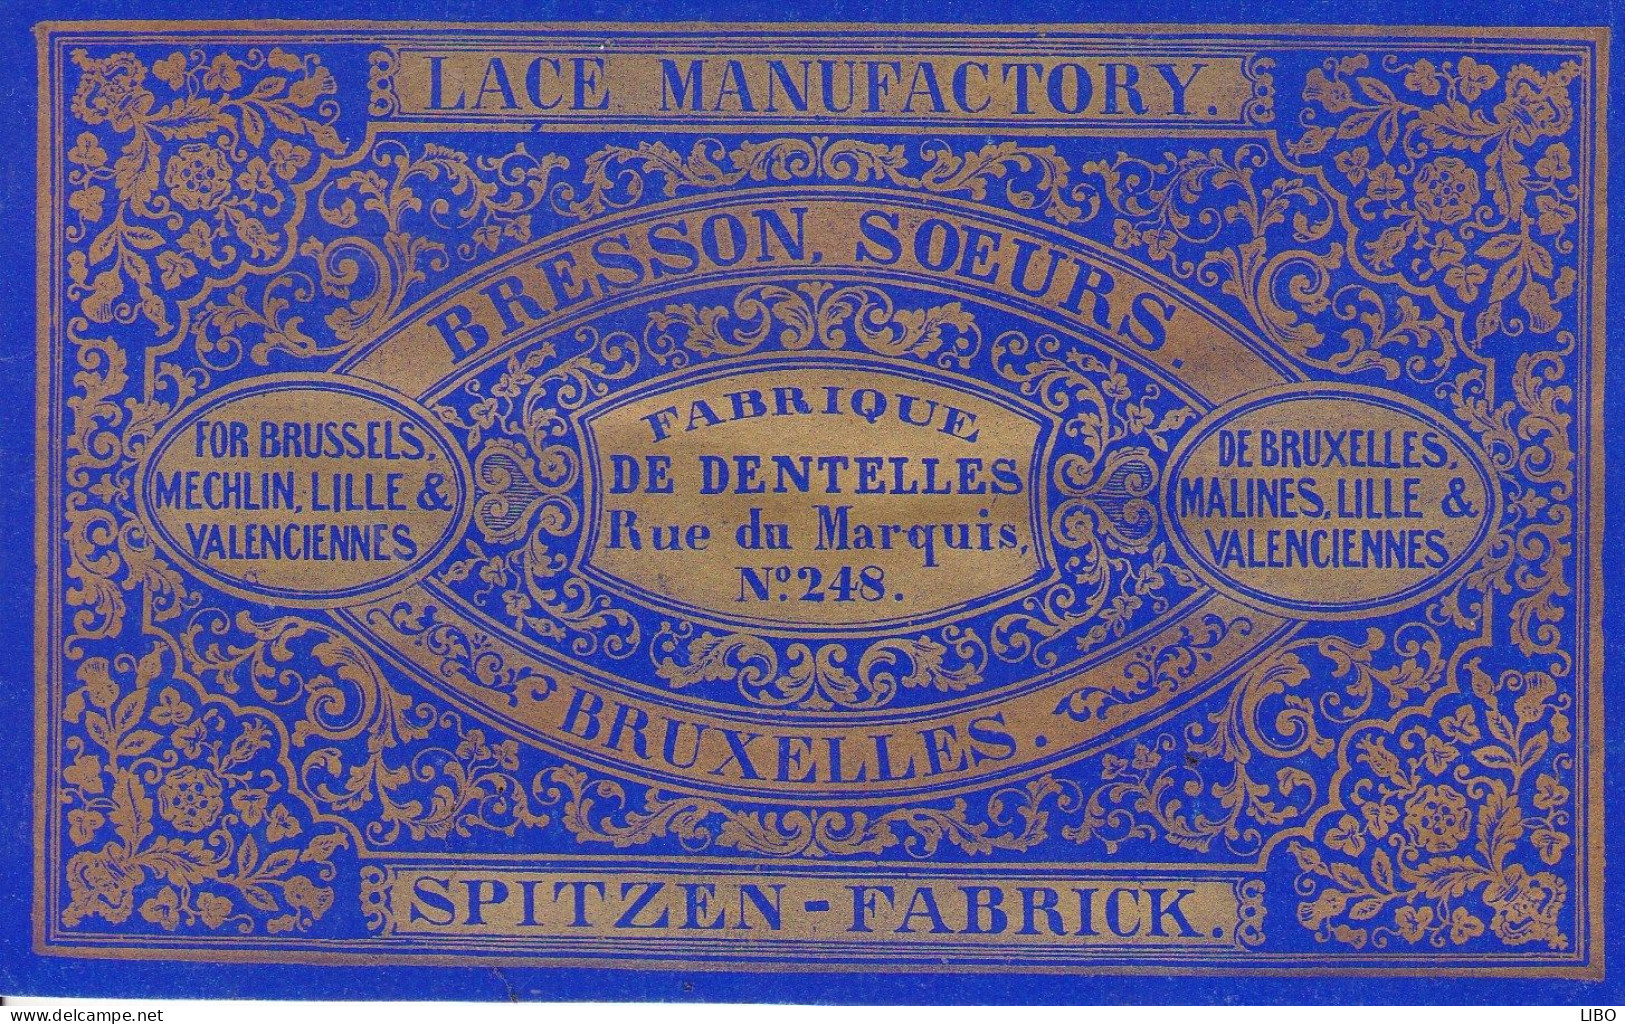 Fabrique De Dentelles SPITZEN-FABRICK BRESSON Soeurs Bruxelles Rue Du Marquis BRUXELLES LILLE VALENCIENNES C. 1860 - Visitenkarten